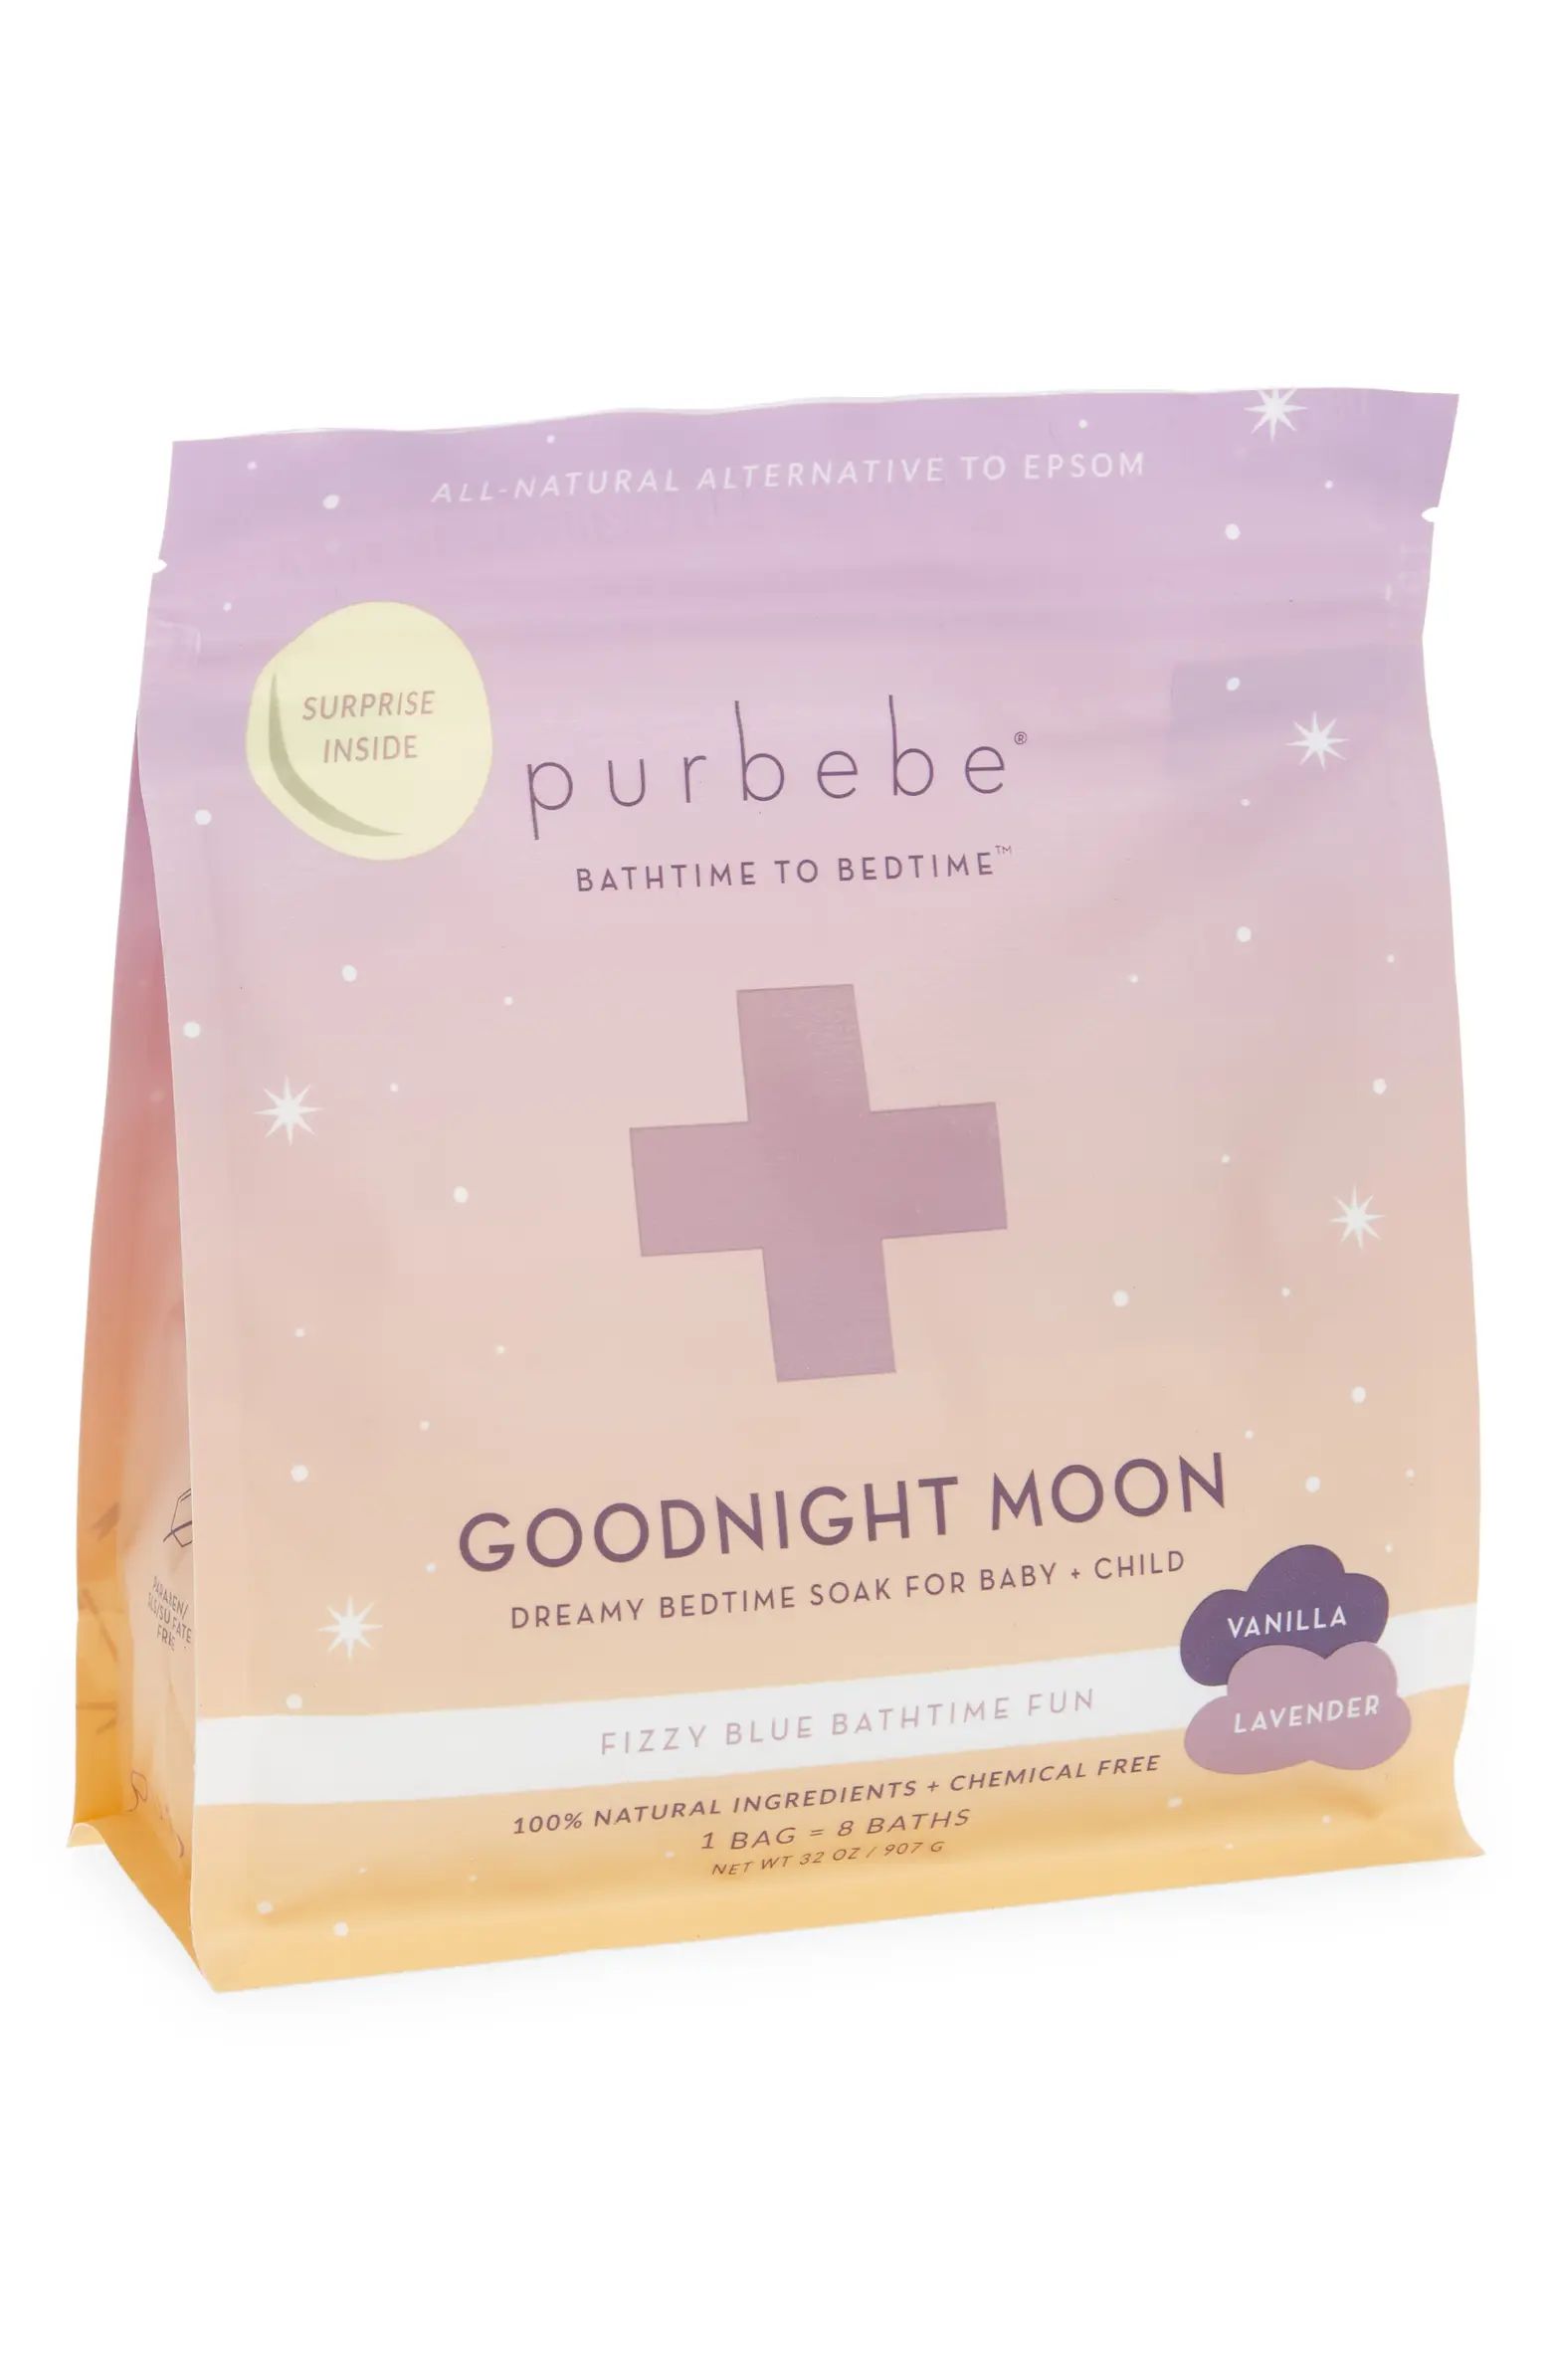 Pursoma Goodnight Moon Bath Soak | Nordstrom | Nordstrom